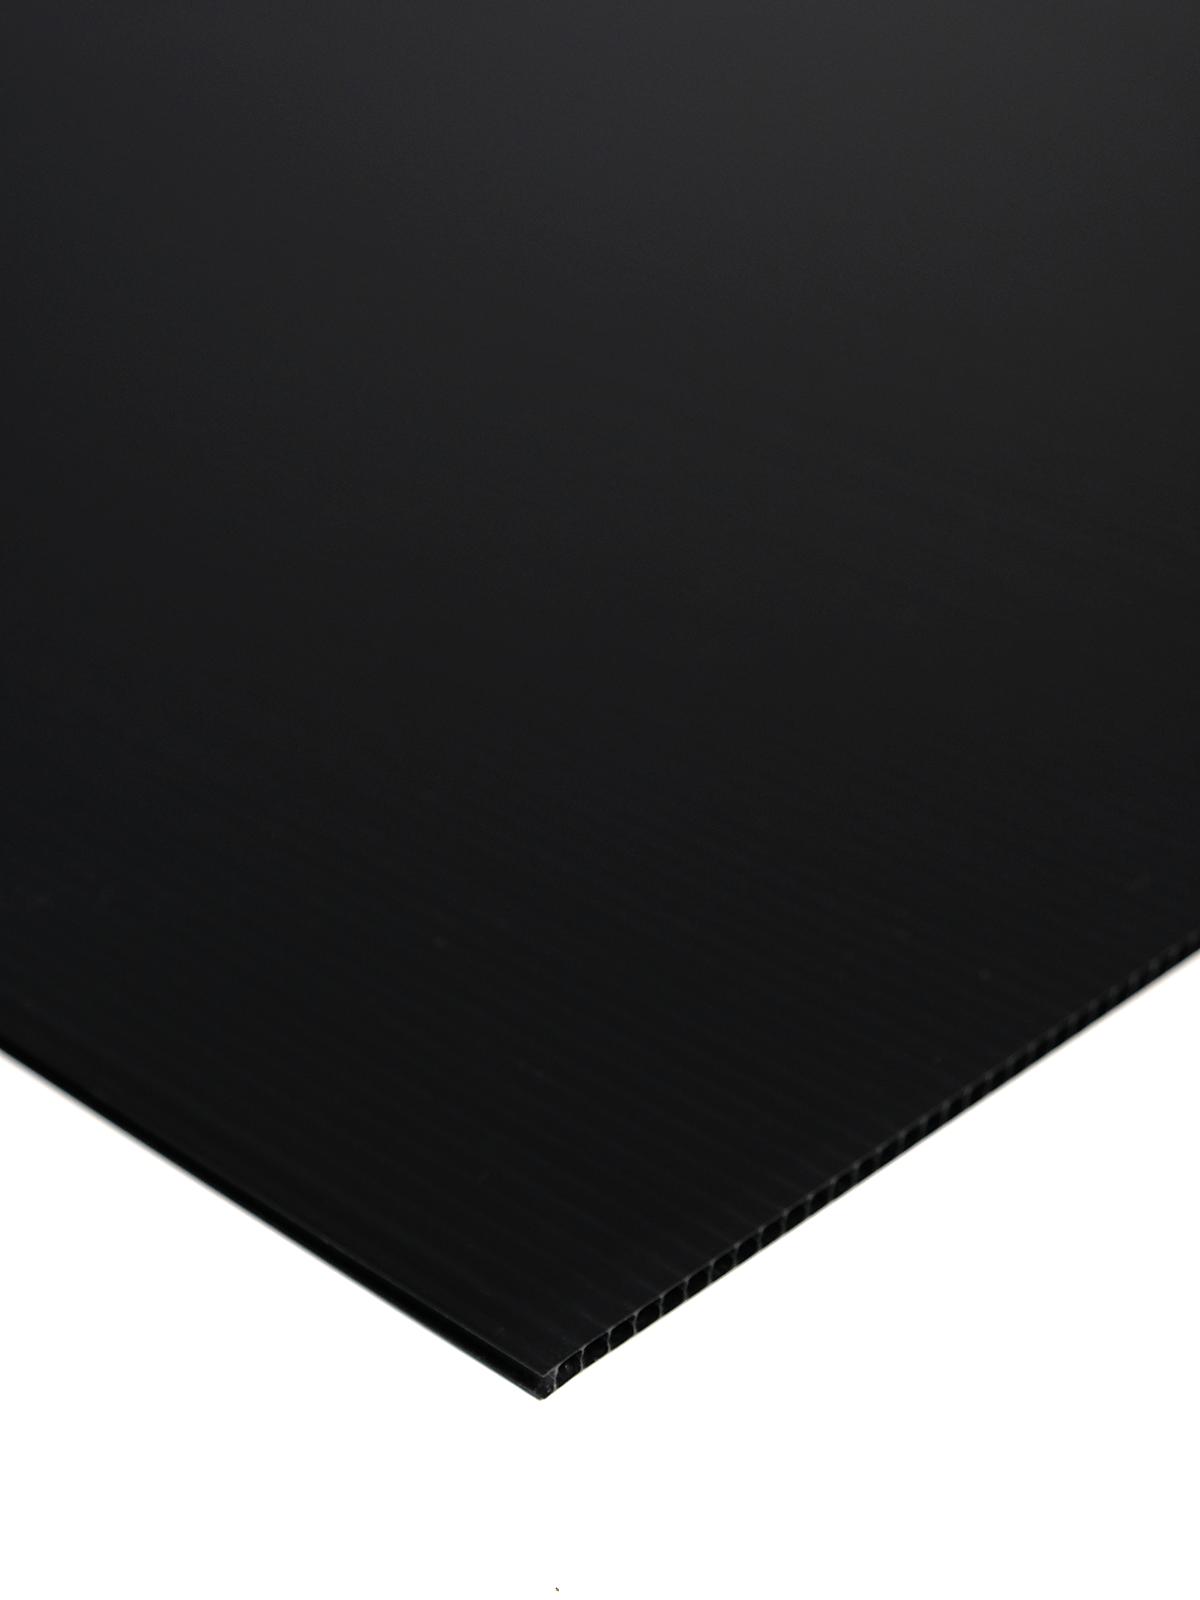 Plasticor Corrugated Boards Black 20 In. X 30 In.